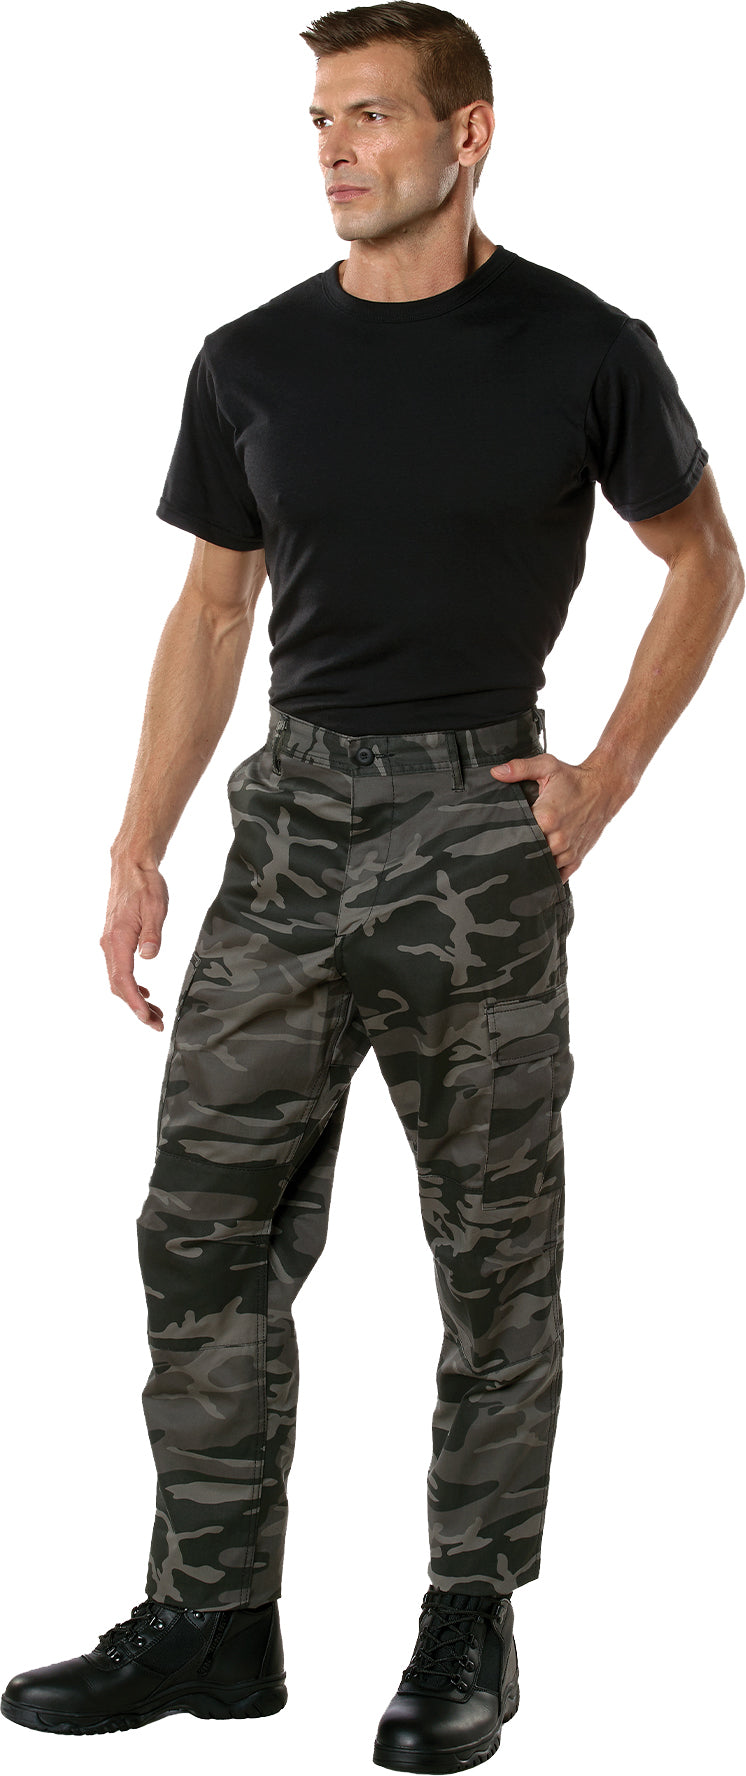 Black Camouflage Color Camo Tactical BDU Pants